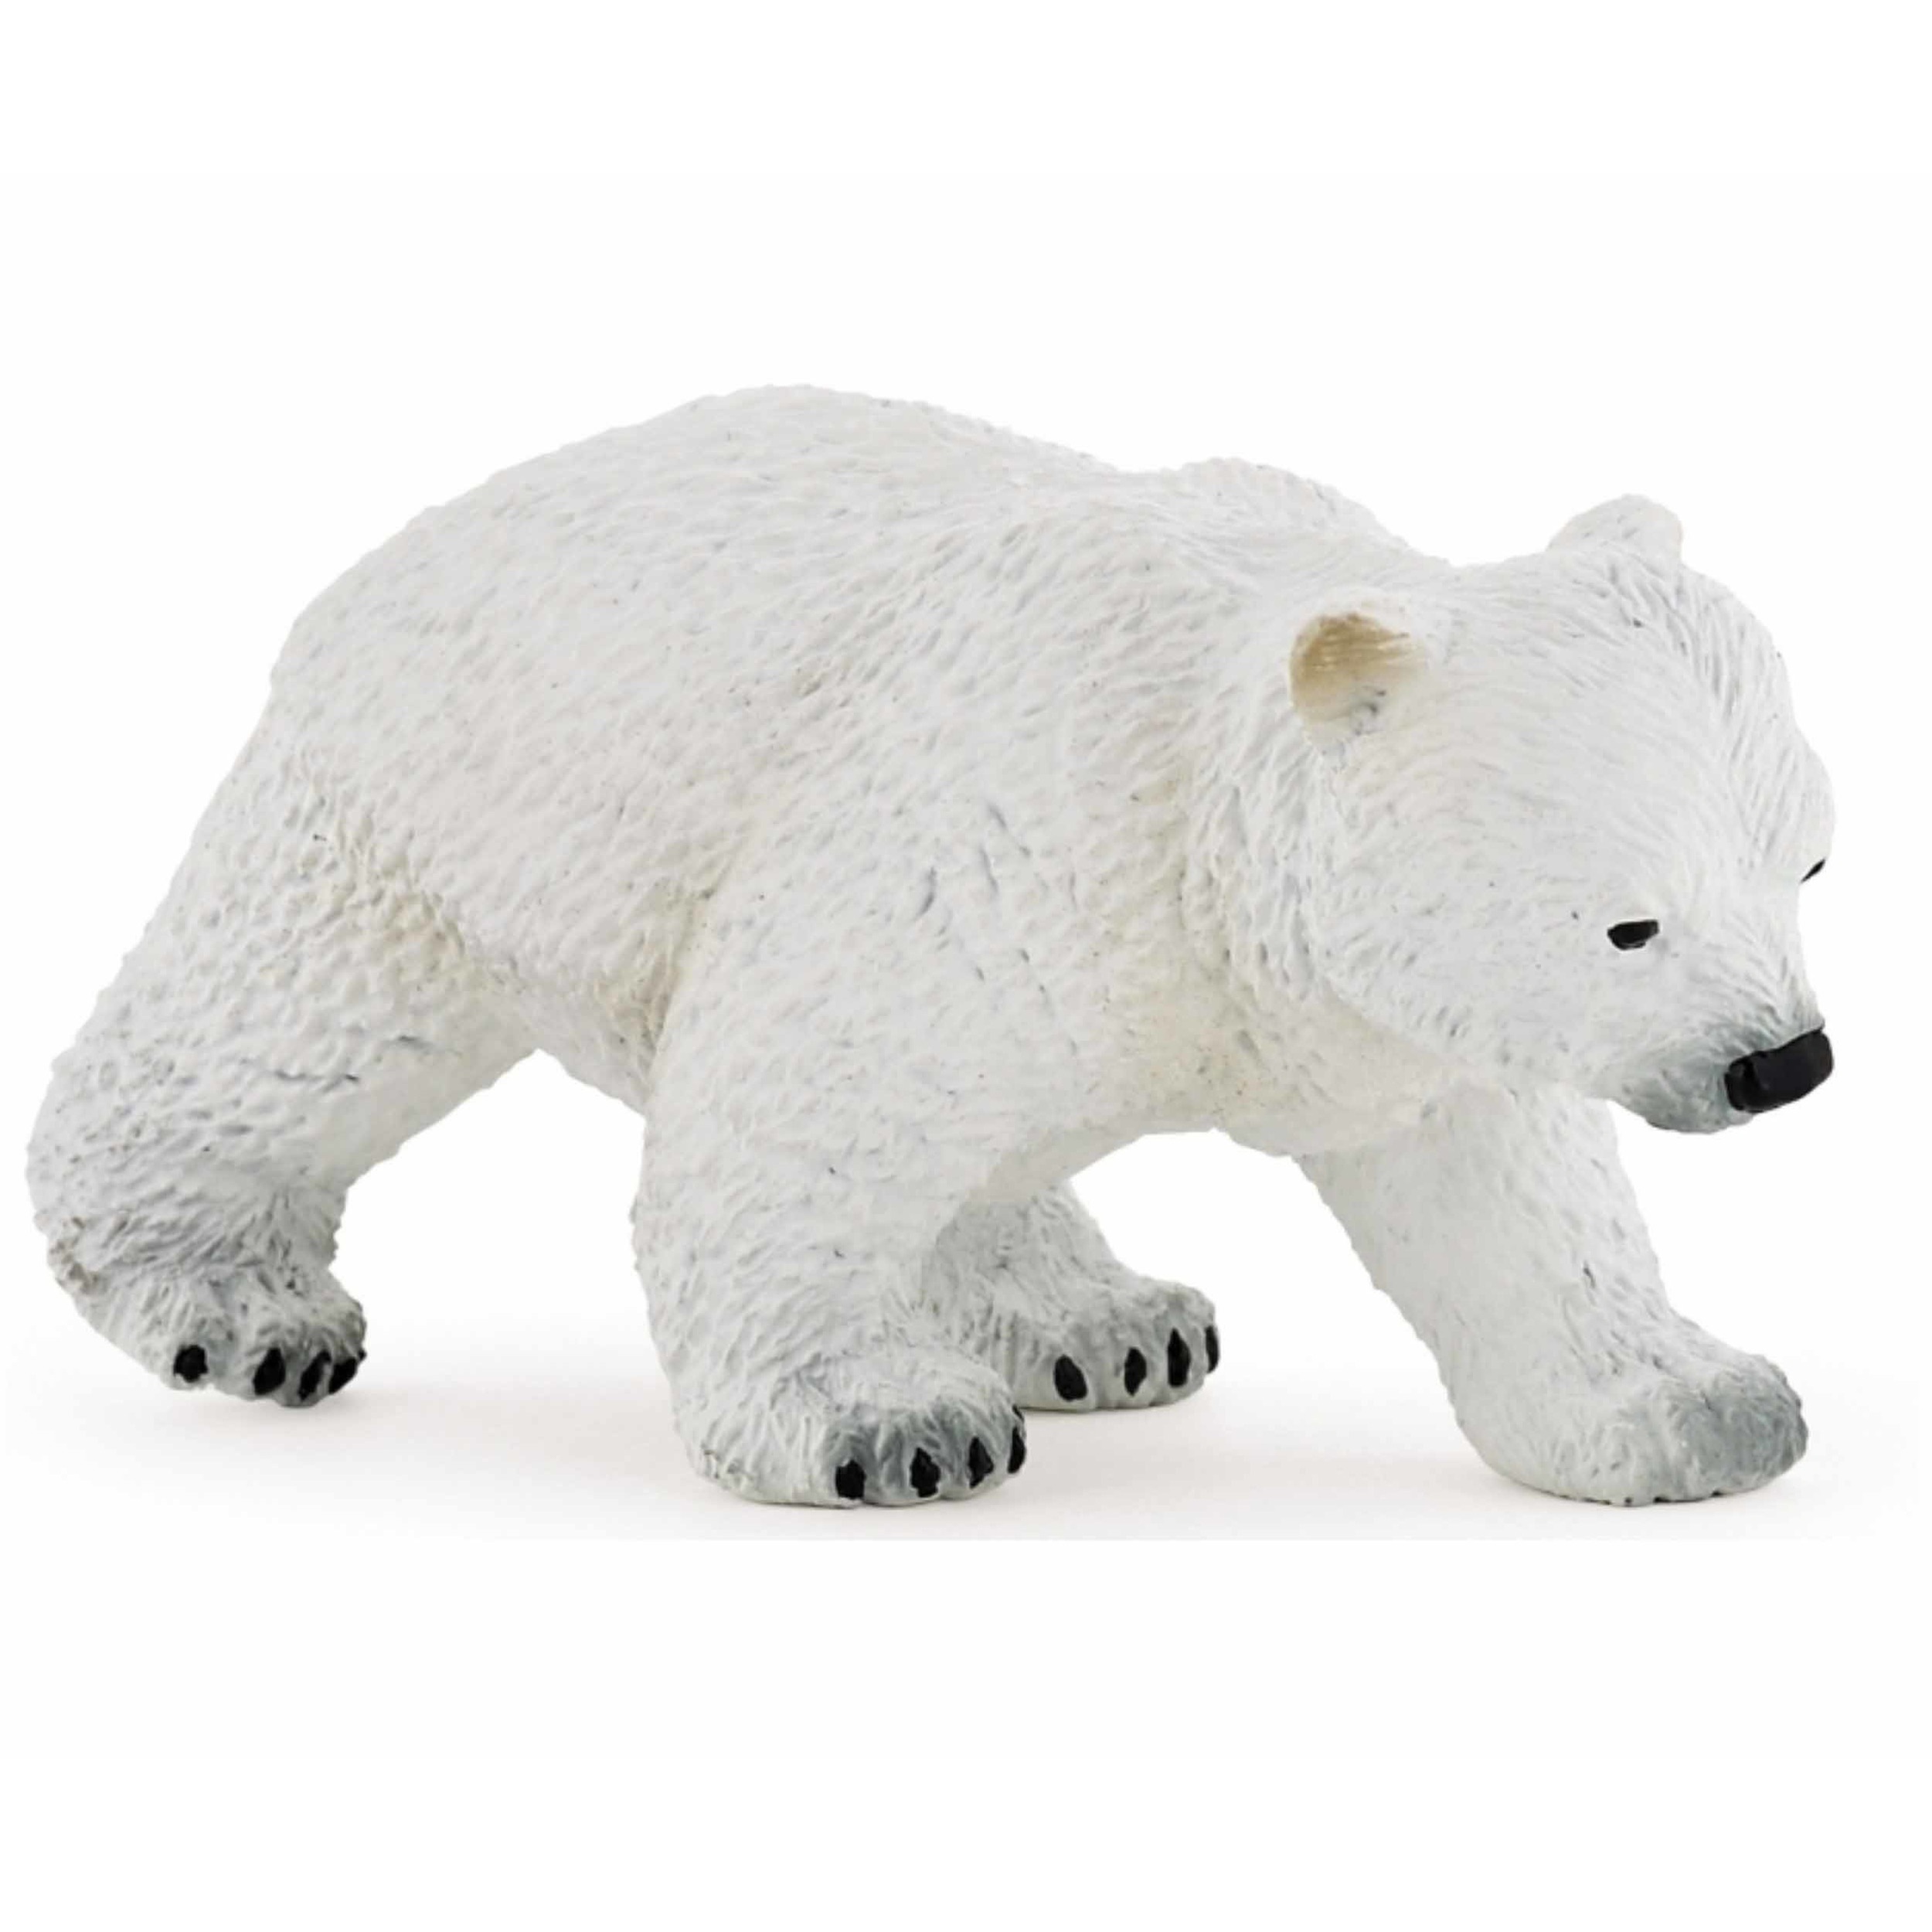 Plastic ijsbeer welpje 8 cm